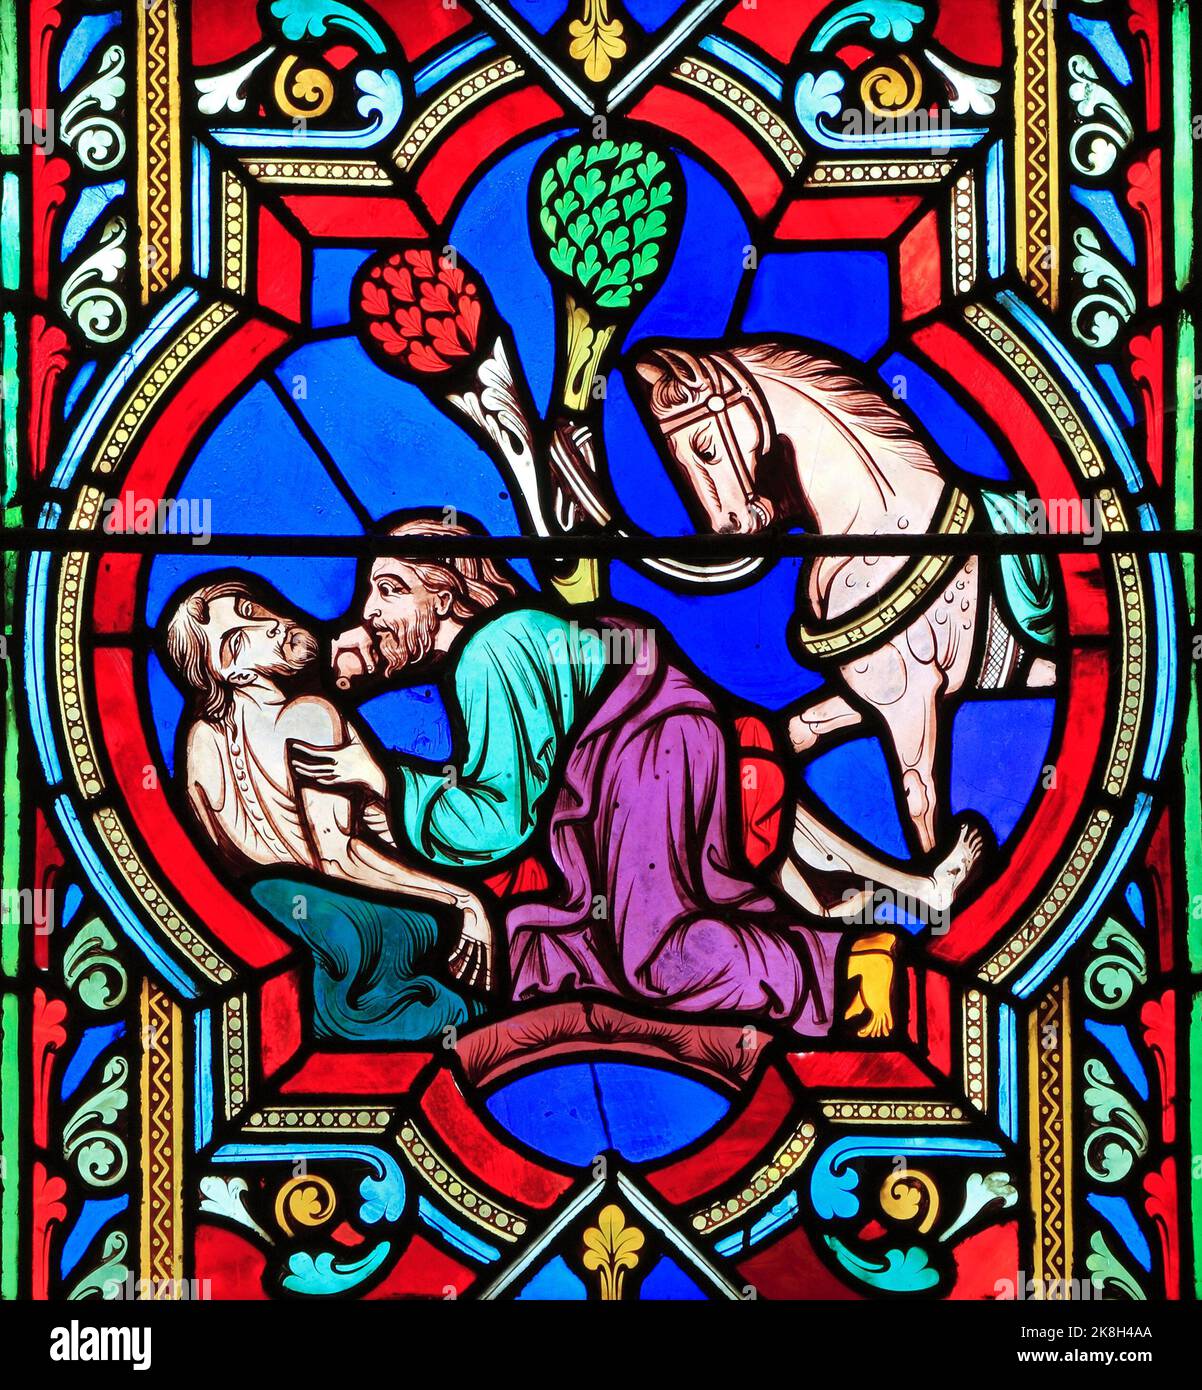 Das barmherzige Samariter-Gleichnis, Samariter sieht den verletzten Reisenden, hilft ihm, Glasfenster von Oudinot aus Paris, 1859, Feltwell, Norfolk Stockfoto